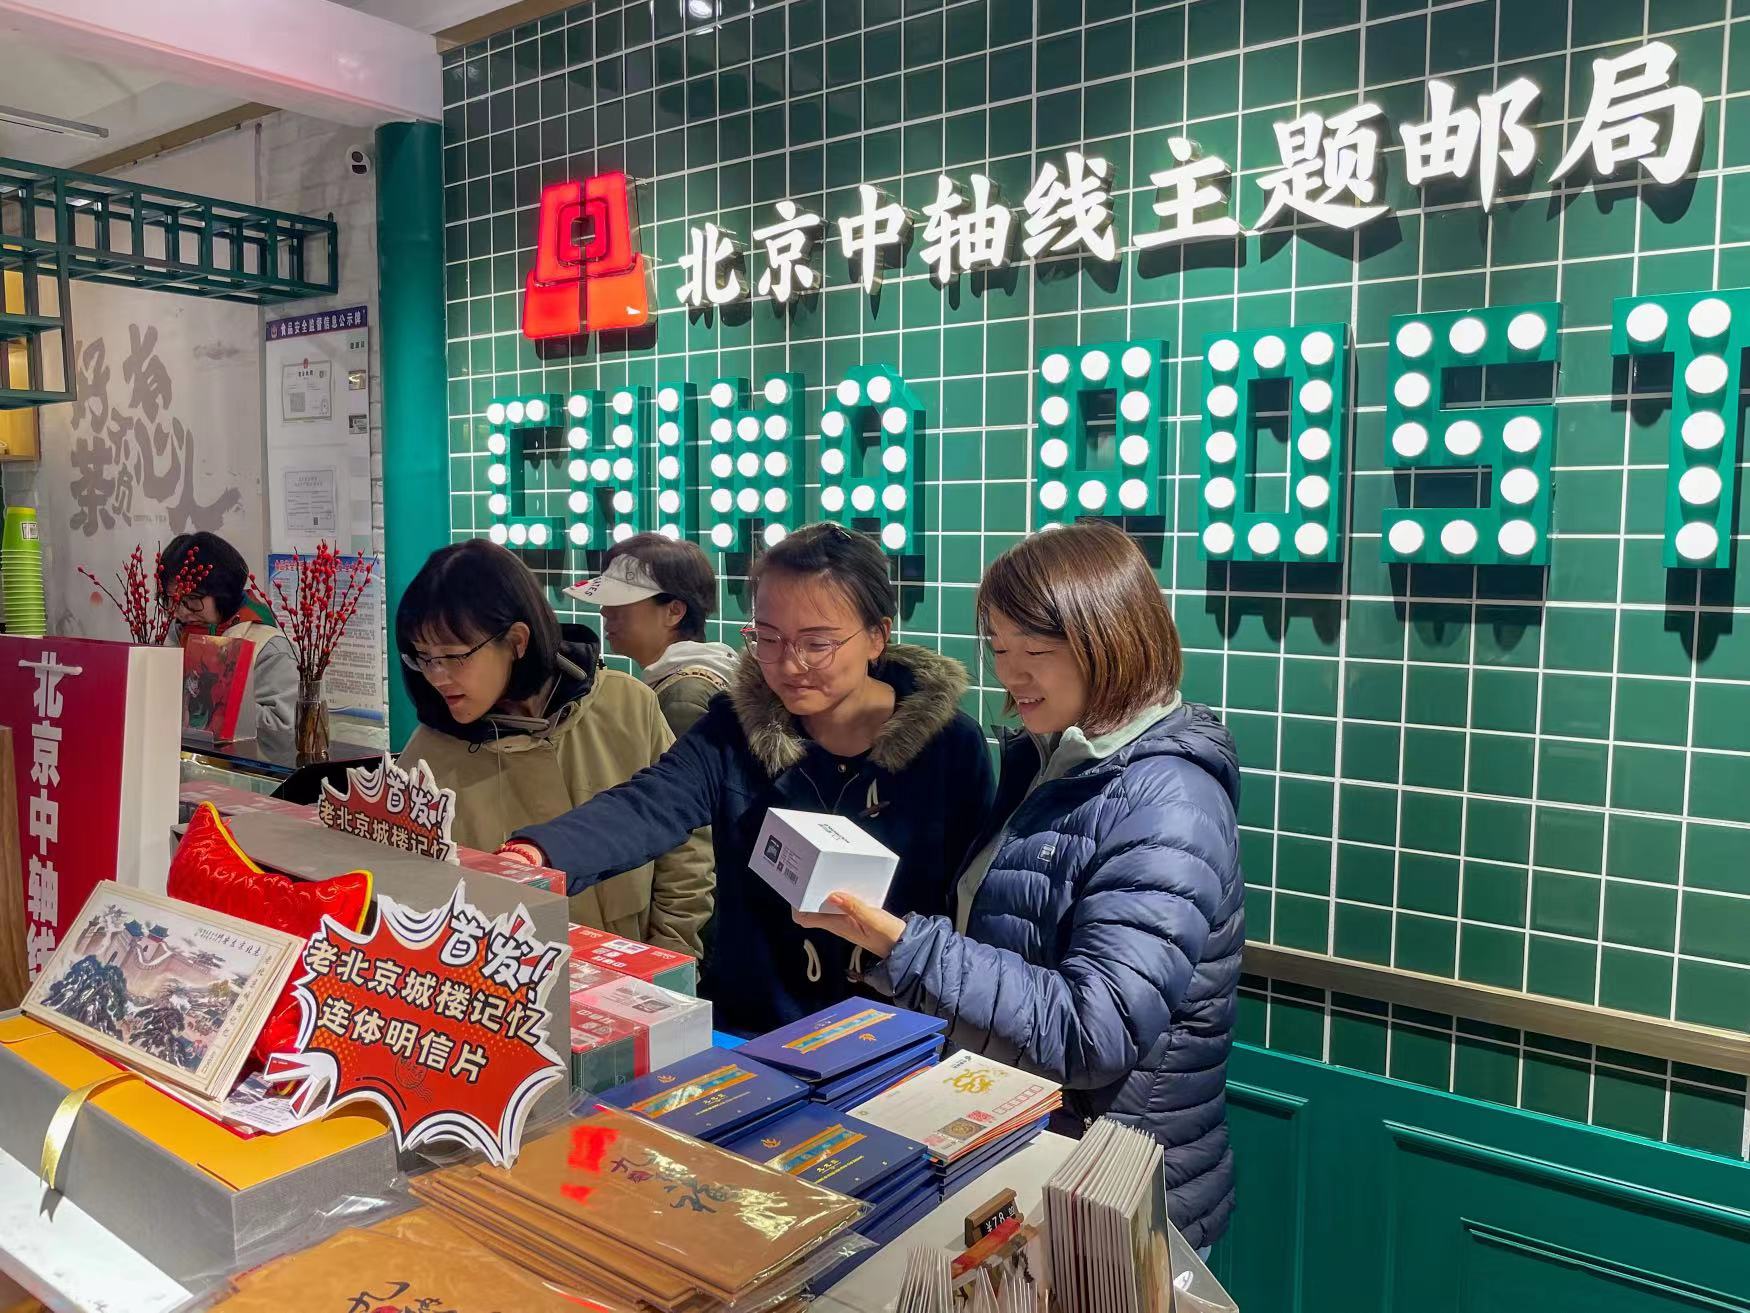 宏恩觀內的北京中軸線主題郵局，各類中軸元素的郵品、文創品等吸引遊覽者駐足。  新京報記者 王貴彬 攝